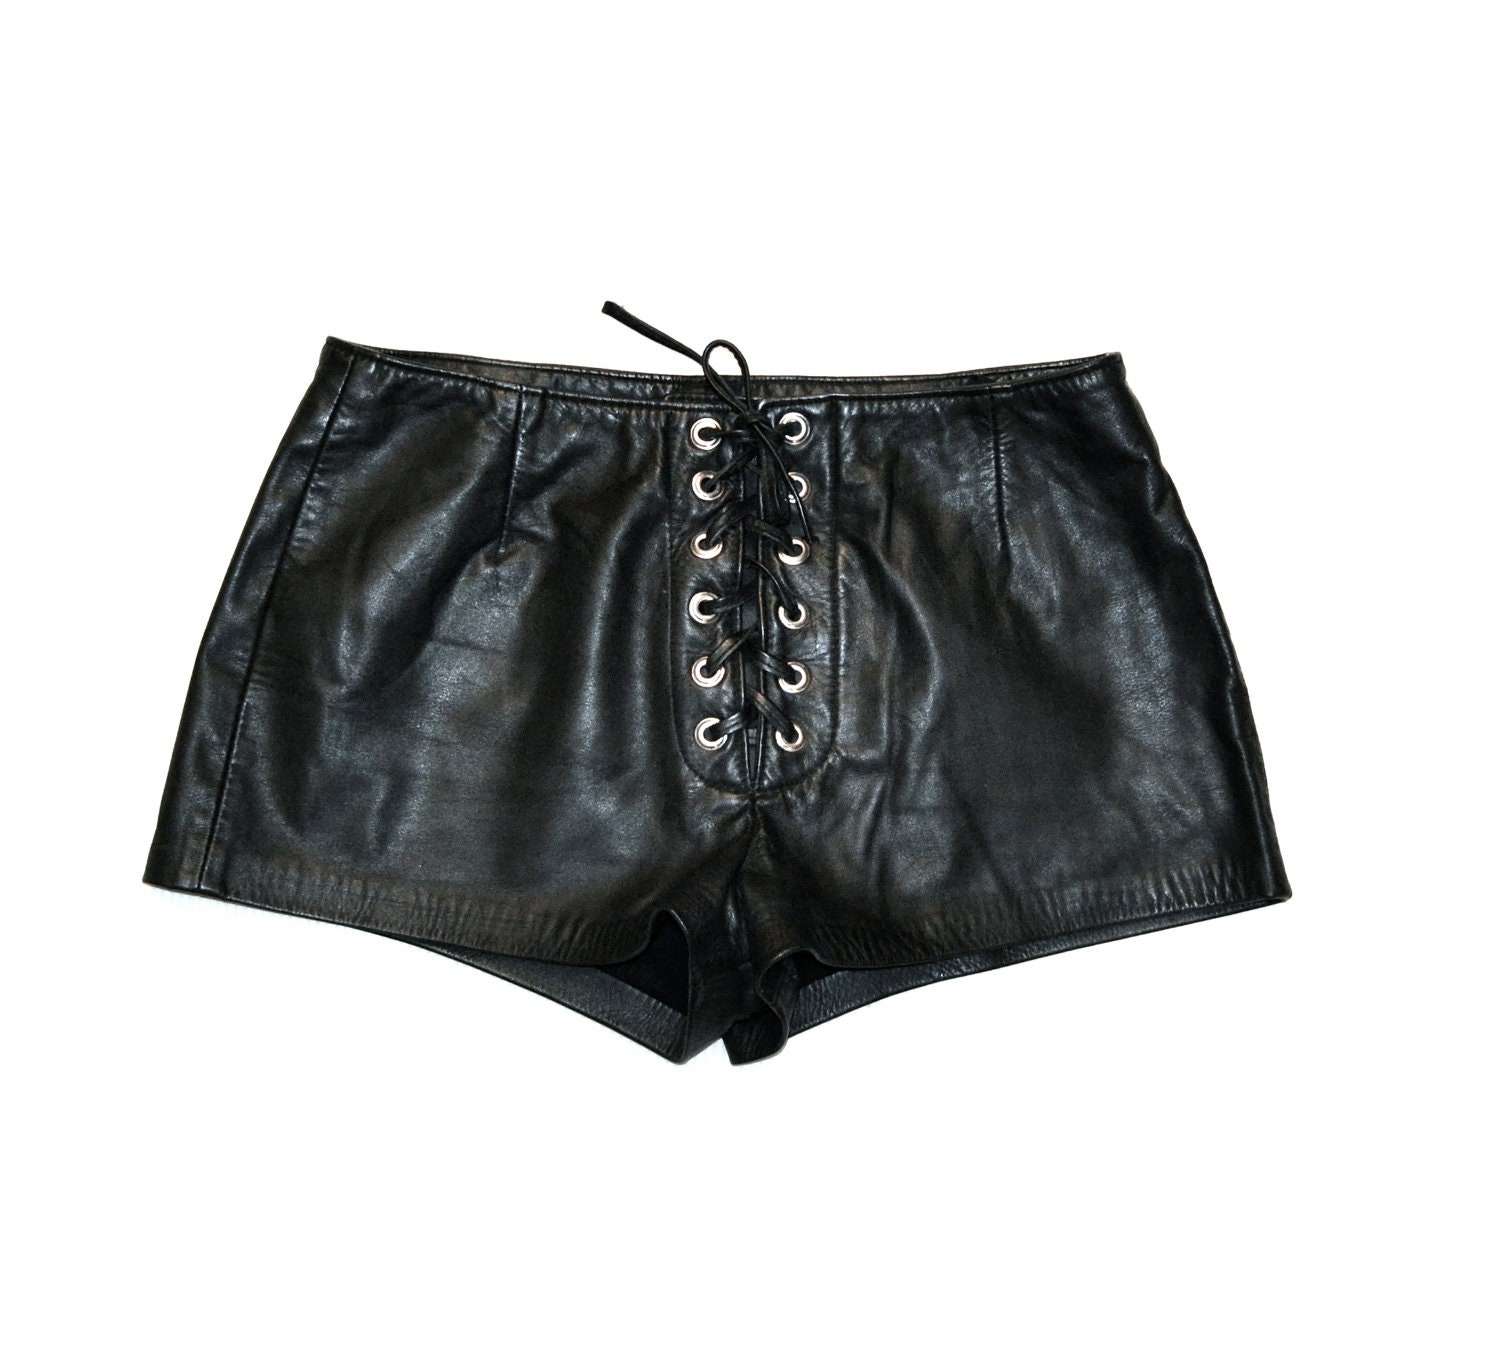 Amazing Black Leather Shorts// 80s Black Leather Lace Up